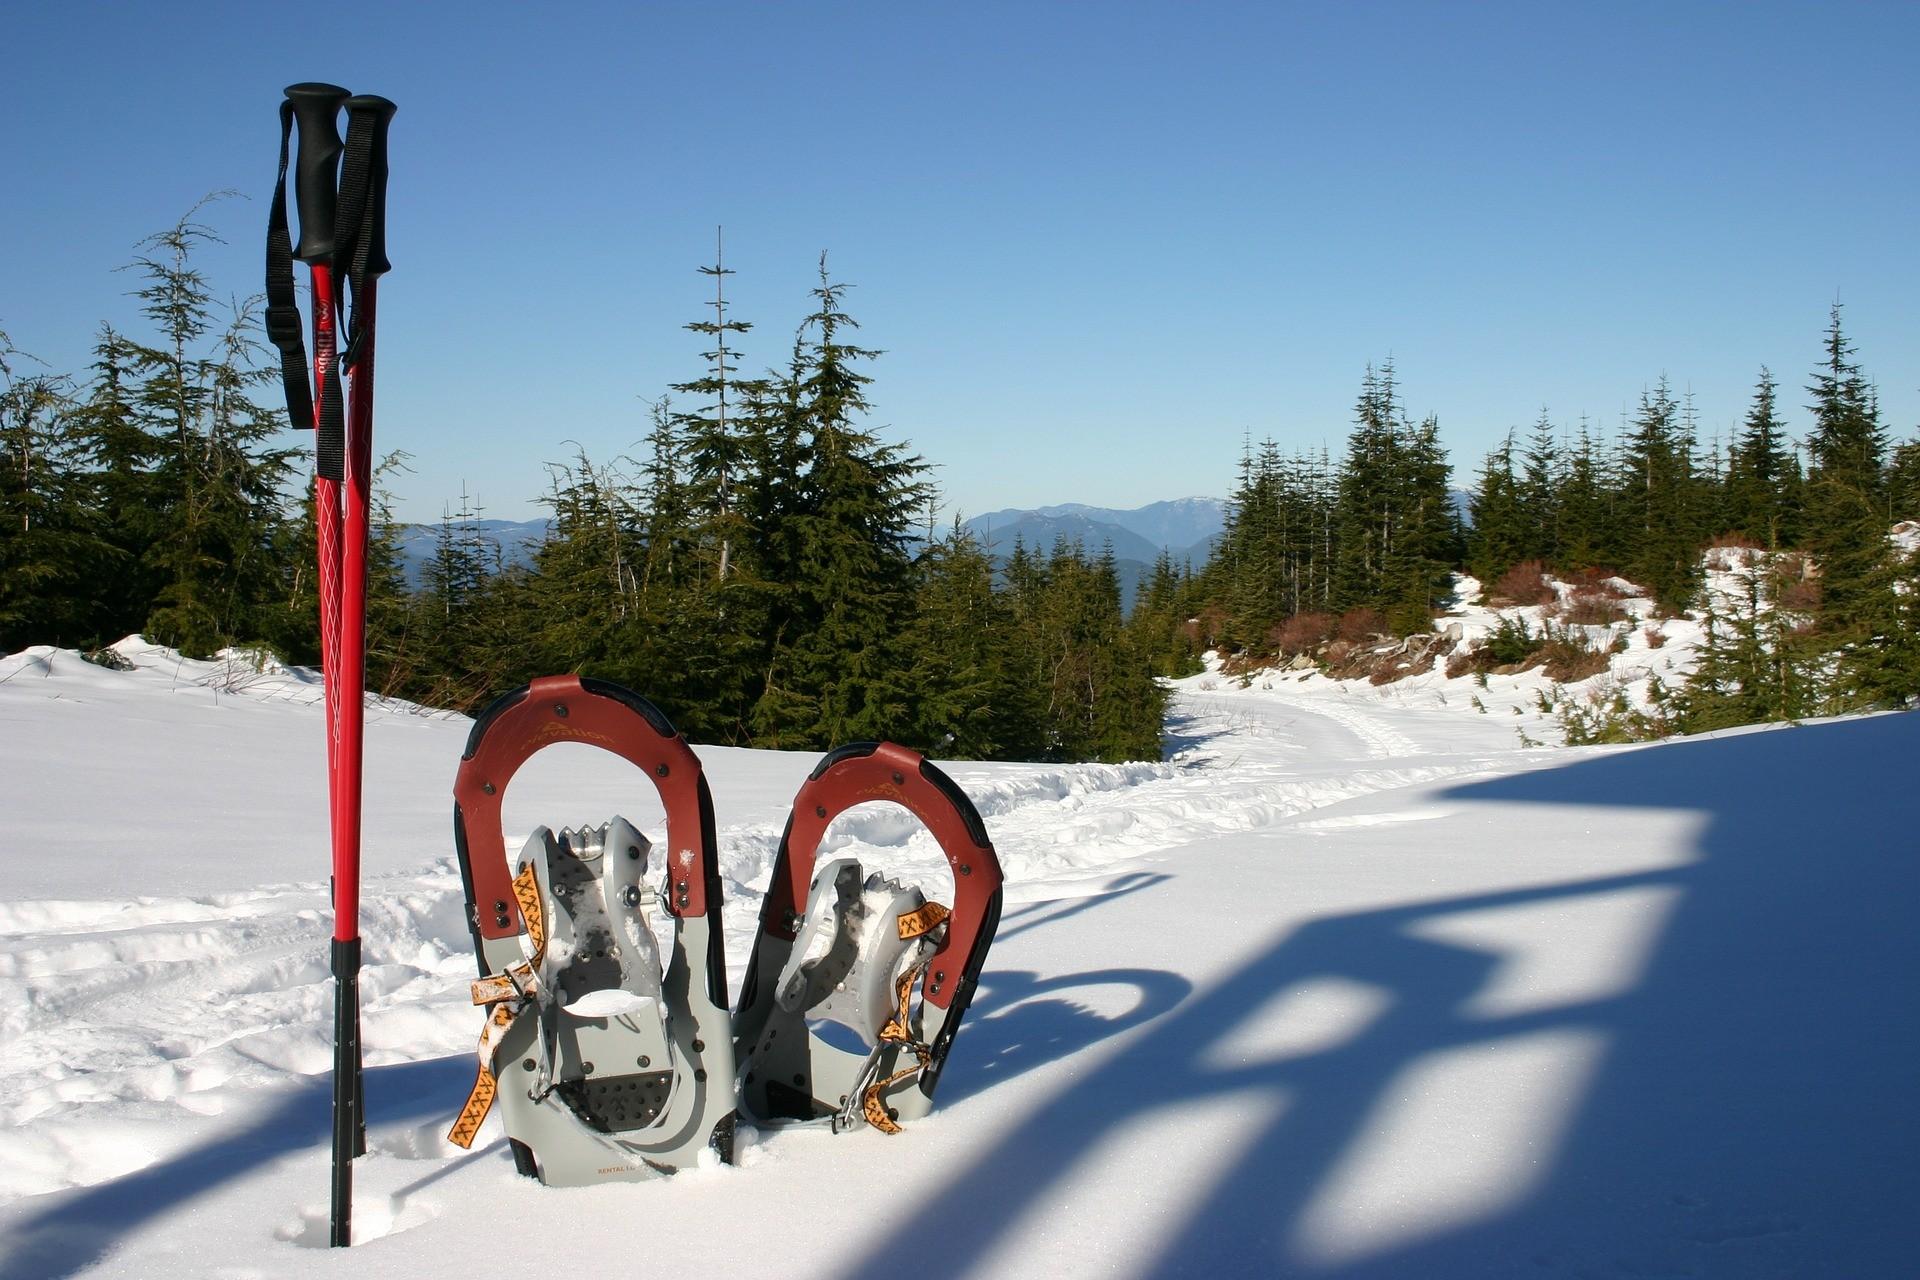 Schneeschuhe und Skistöcke in winterlicher Landschaft